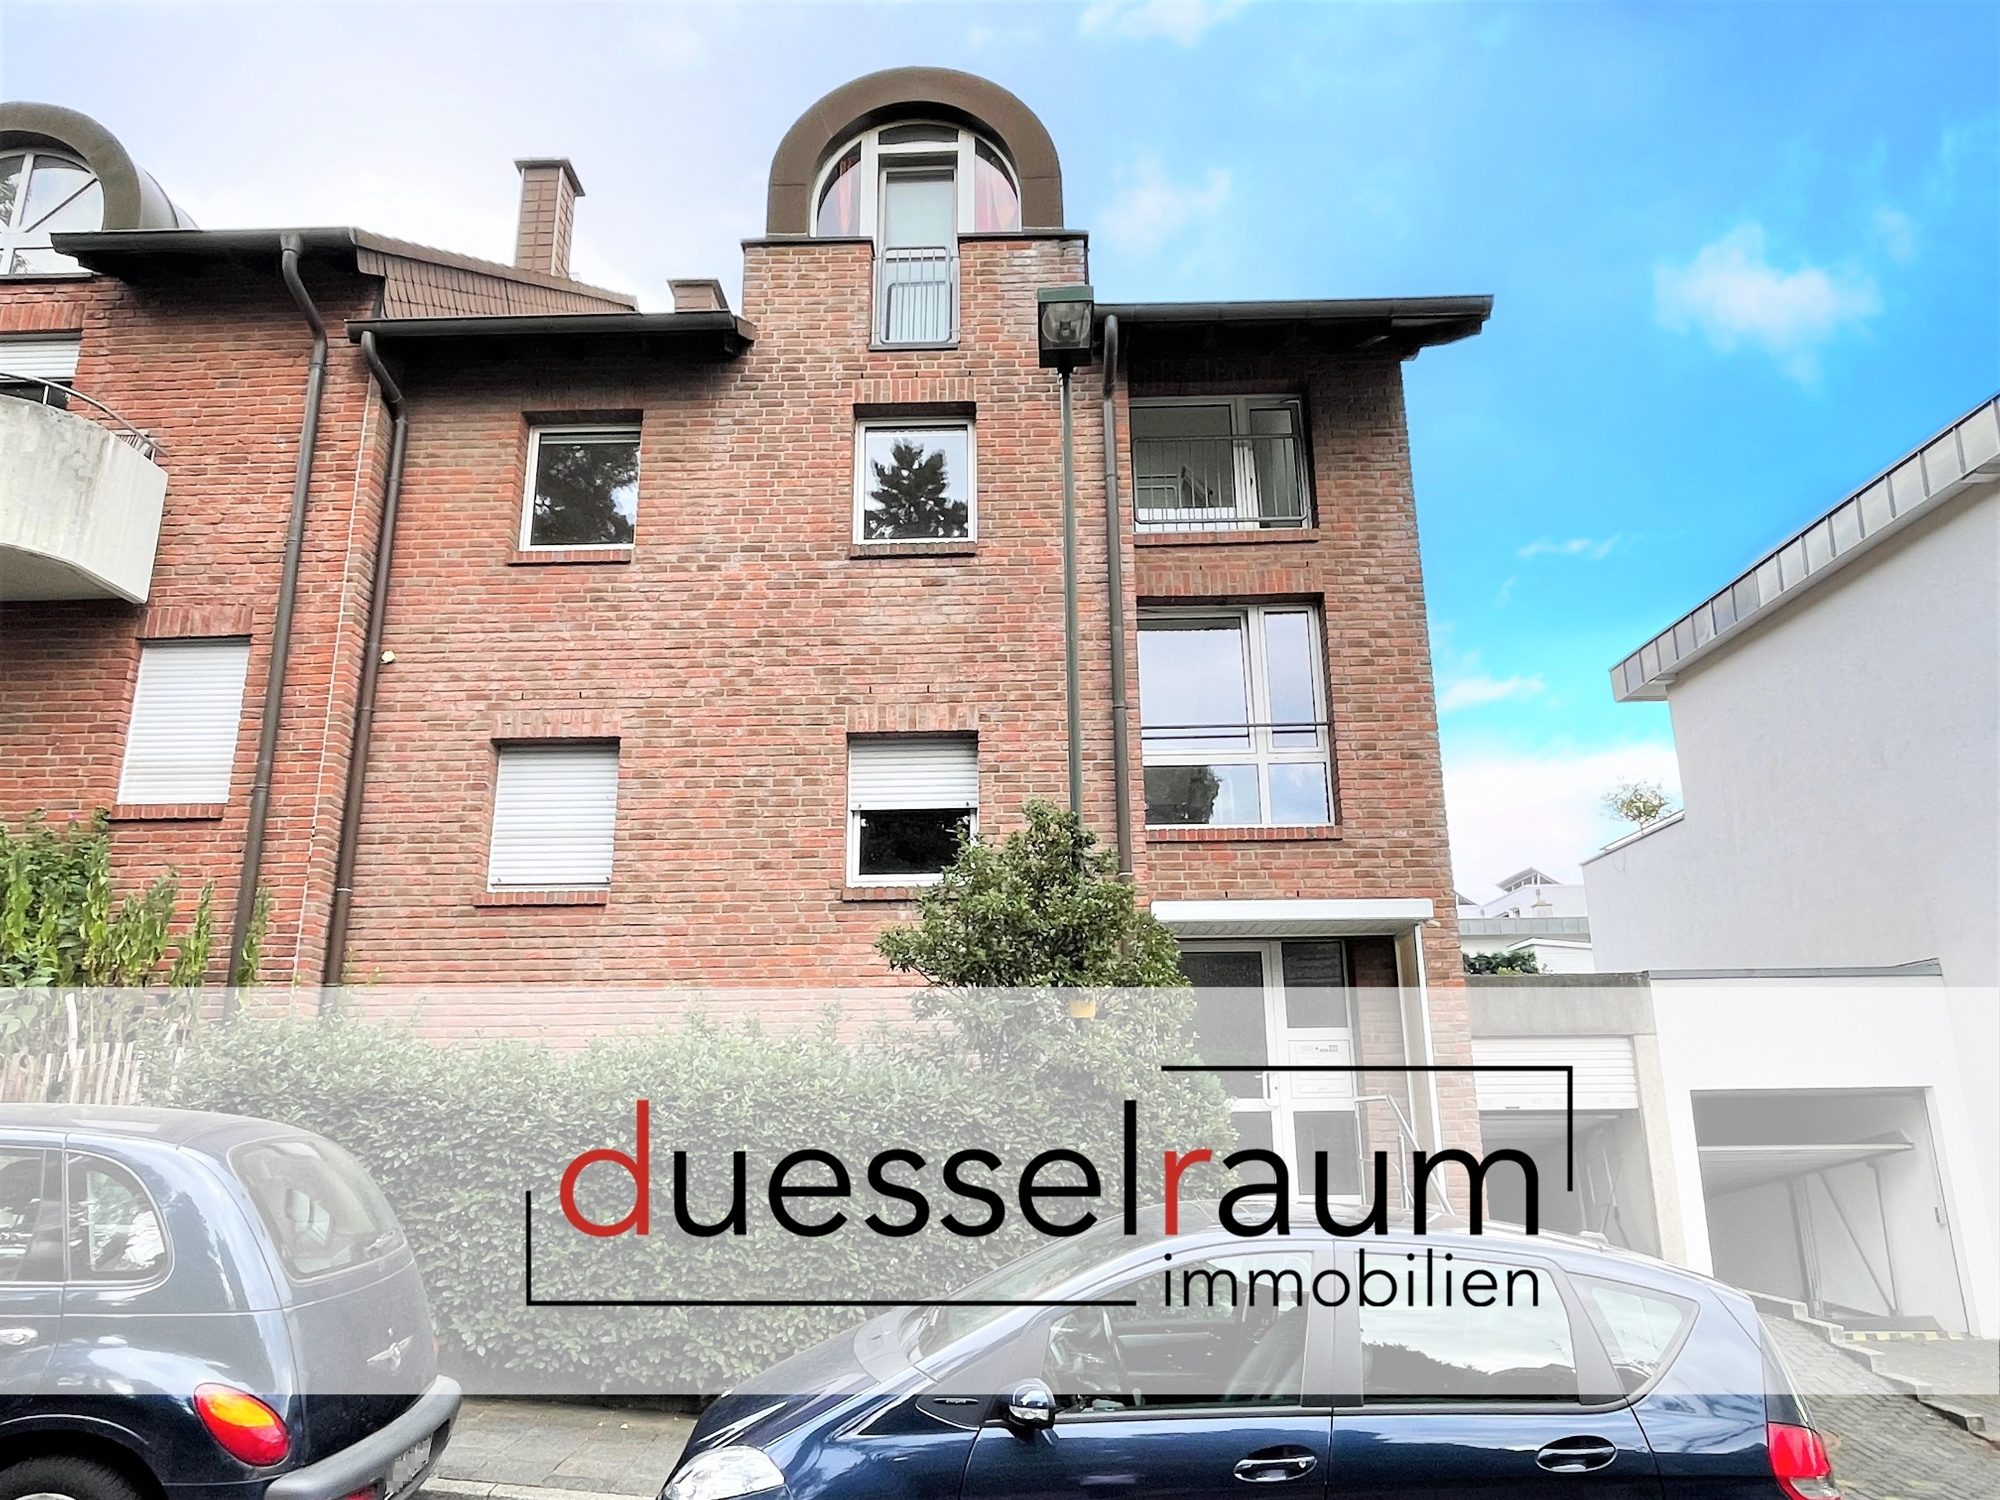 Immobilienangebot - Düsseldorf / Unterbach - Alle - Unterbach: helle 2-Zimmer Wohnung mit großem Balkon und EBK in grüner und idyllischer Umgebung!